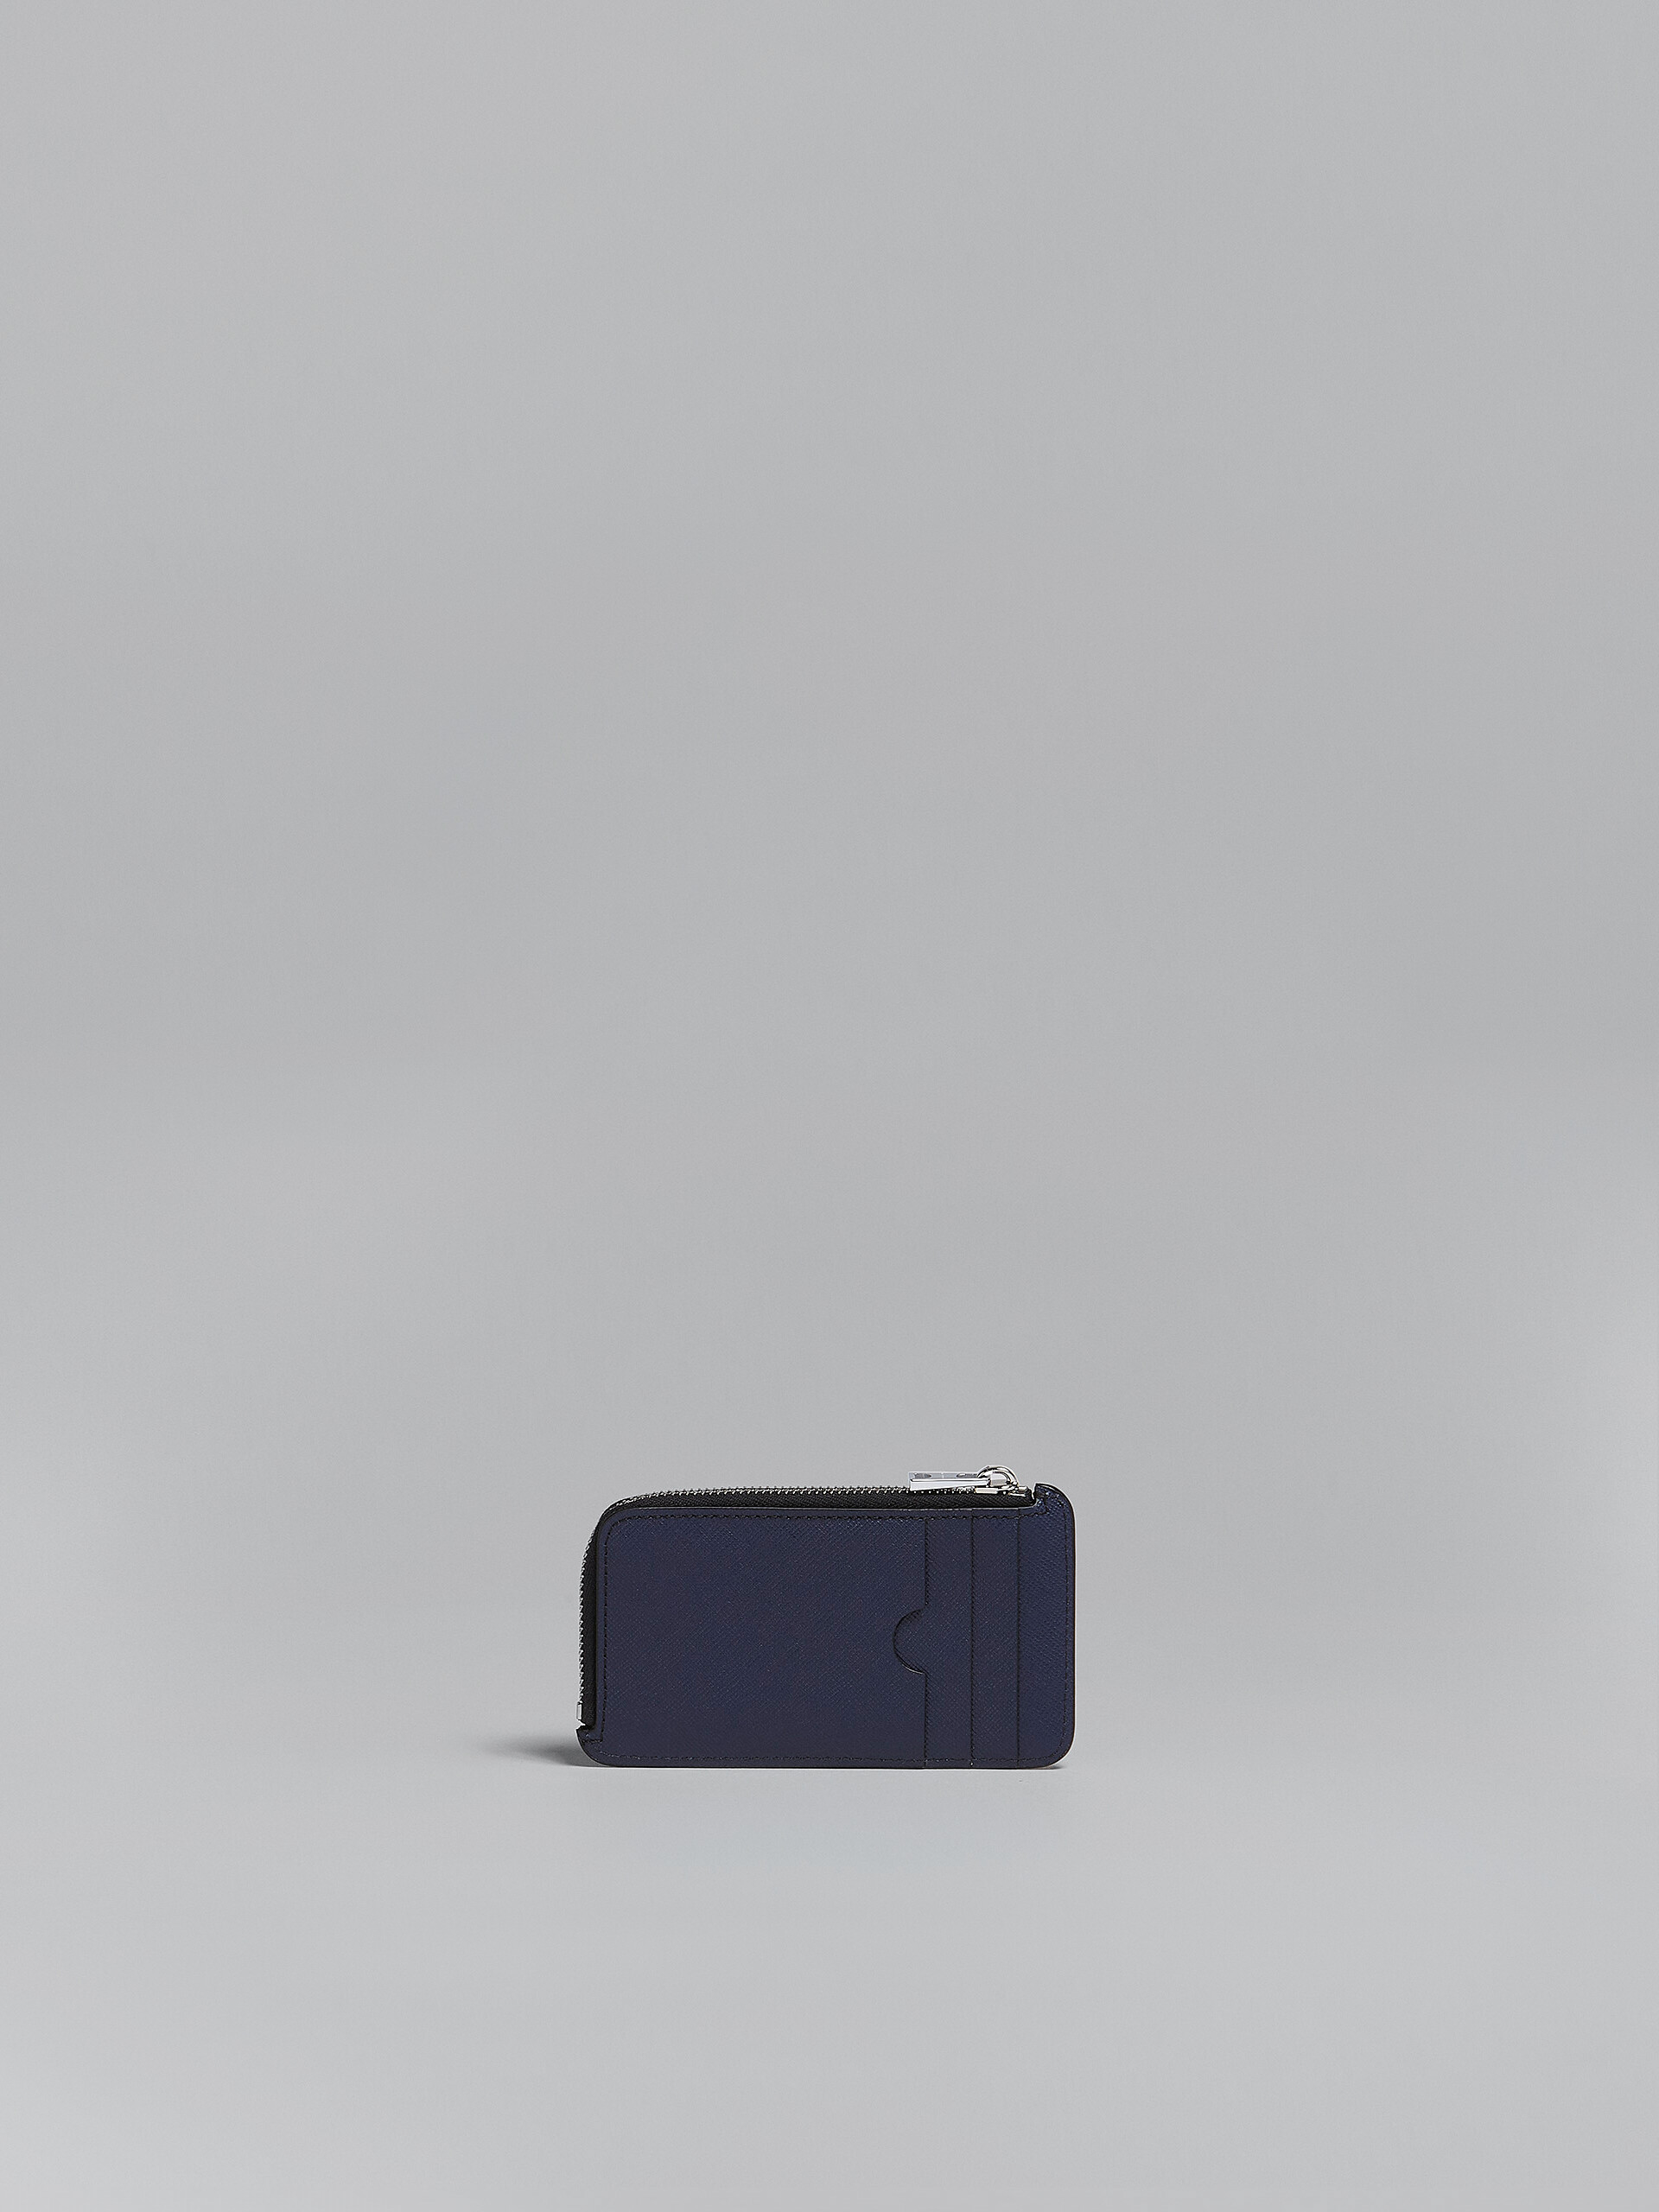 Portacarte con zip in saffiano nero e blu - Portafogli - Image 3